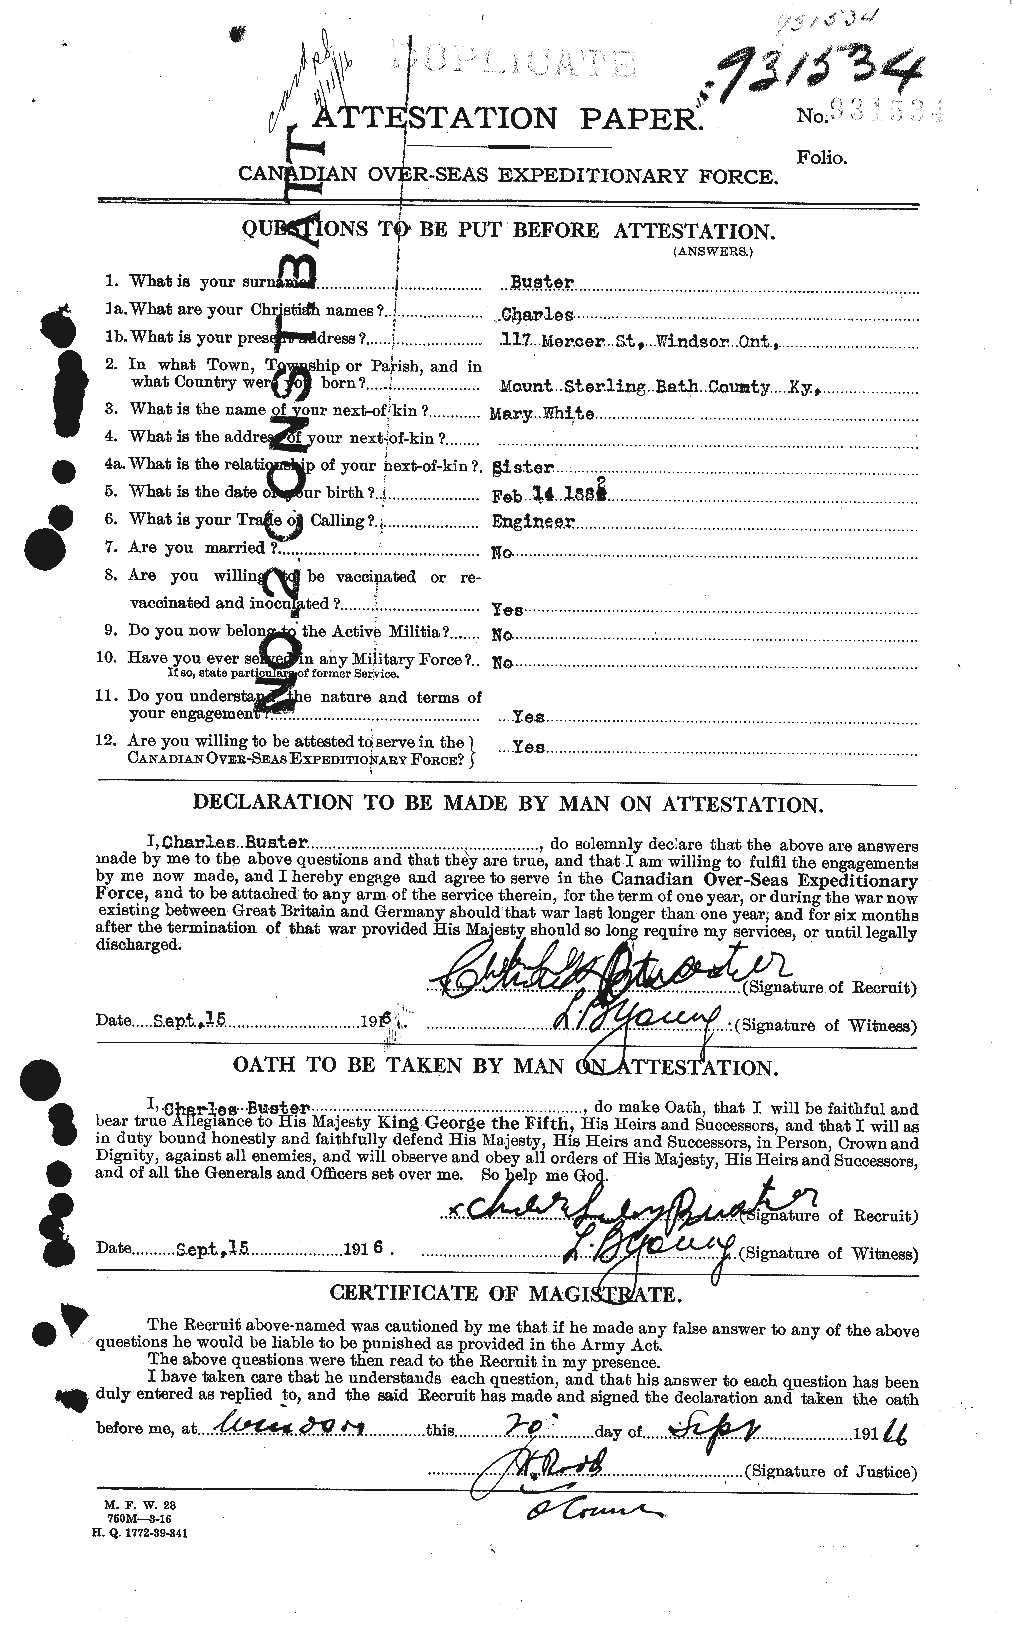 Dossiers du Personnel de la Première Guerre mondiale - CEC 274659a